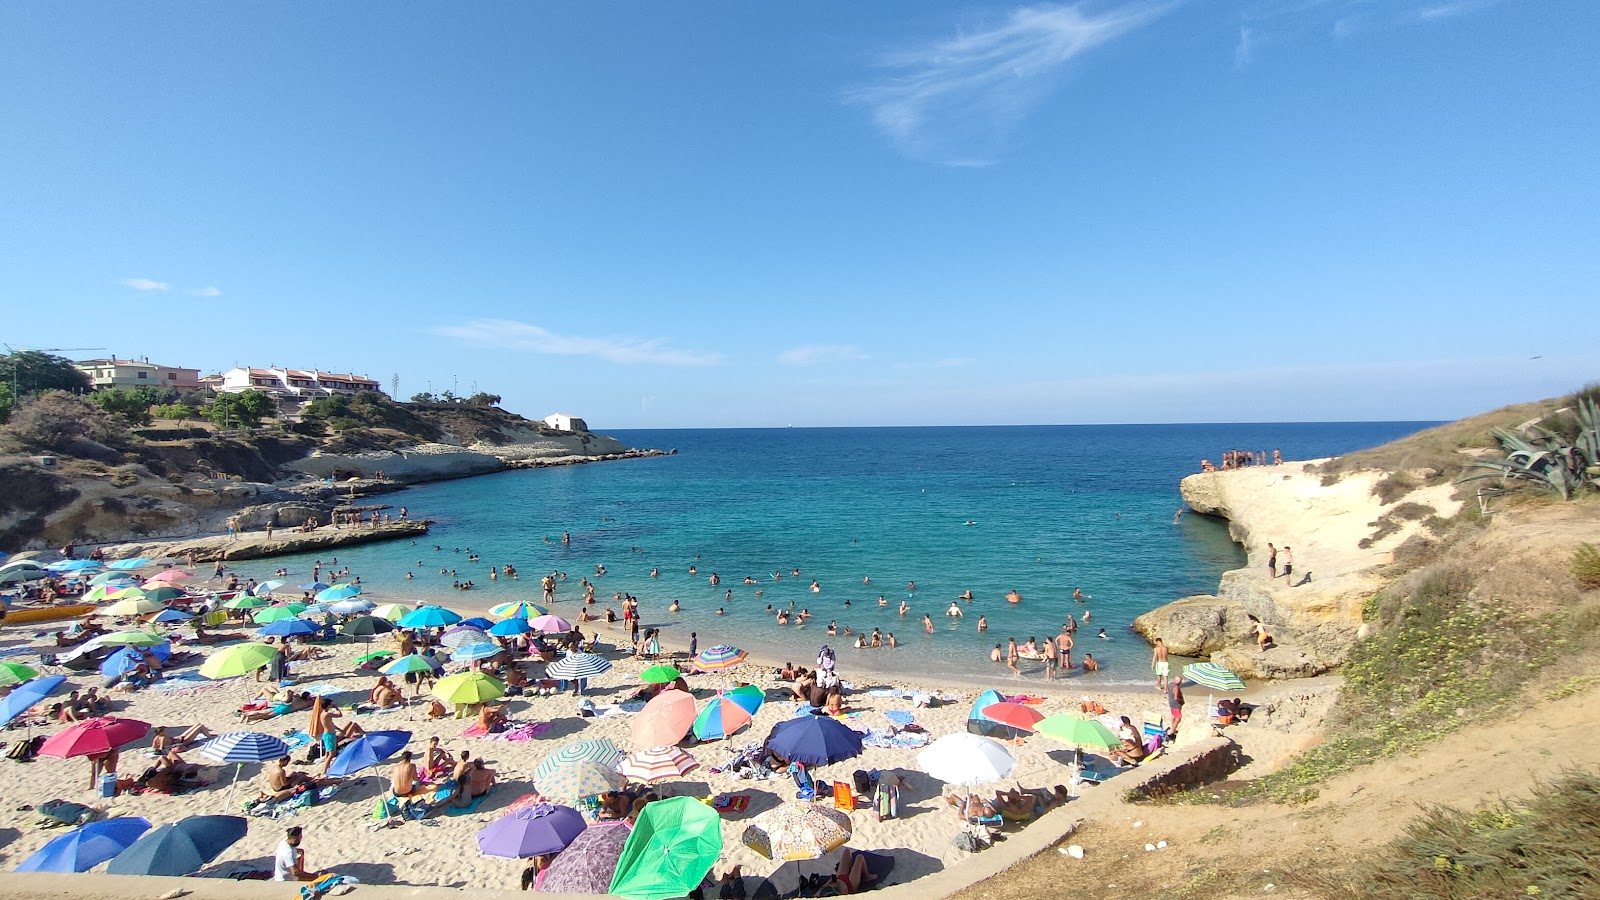 Spiaggia di Balai'in fotoğrafı parlak kum yüzey ile